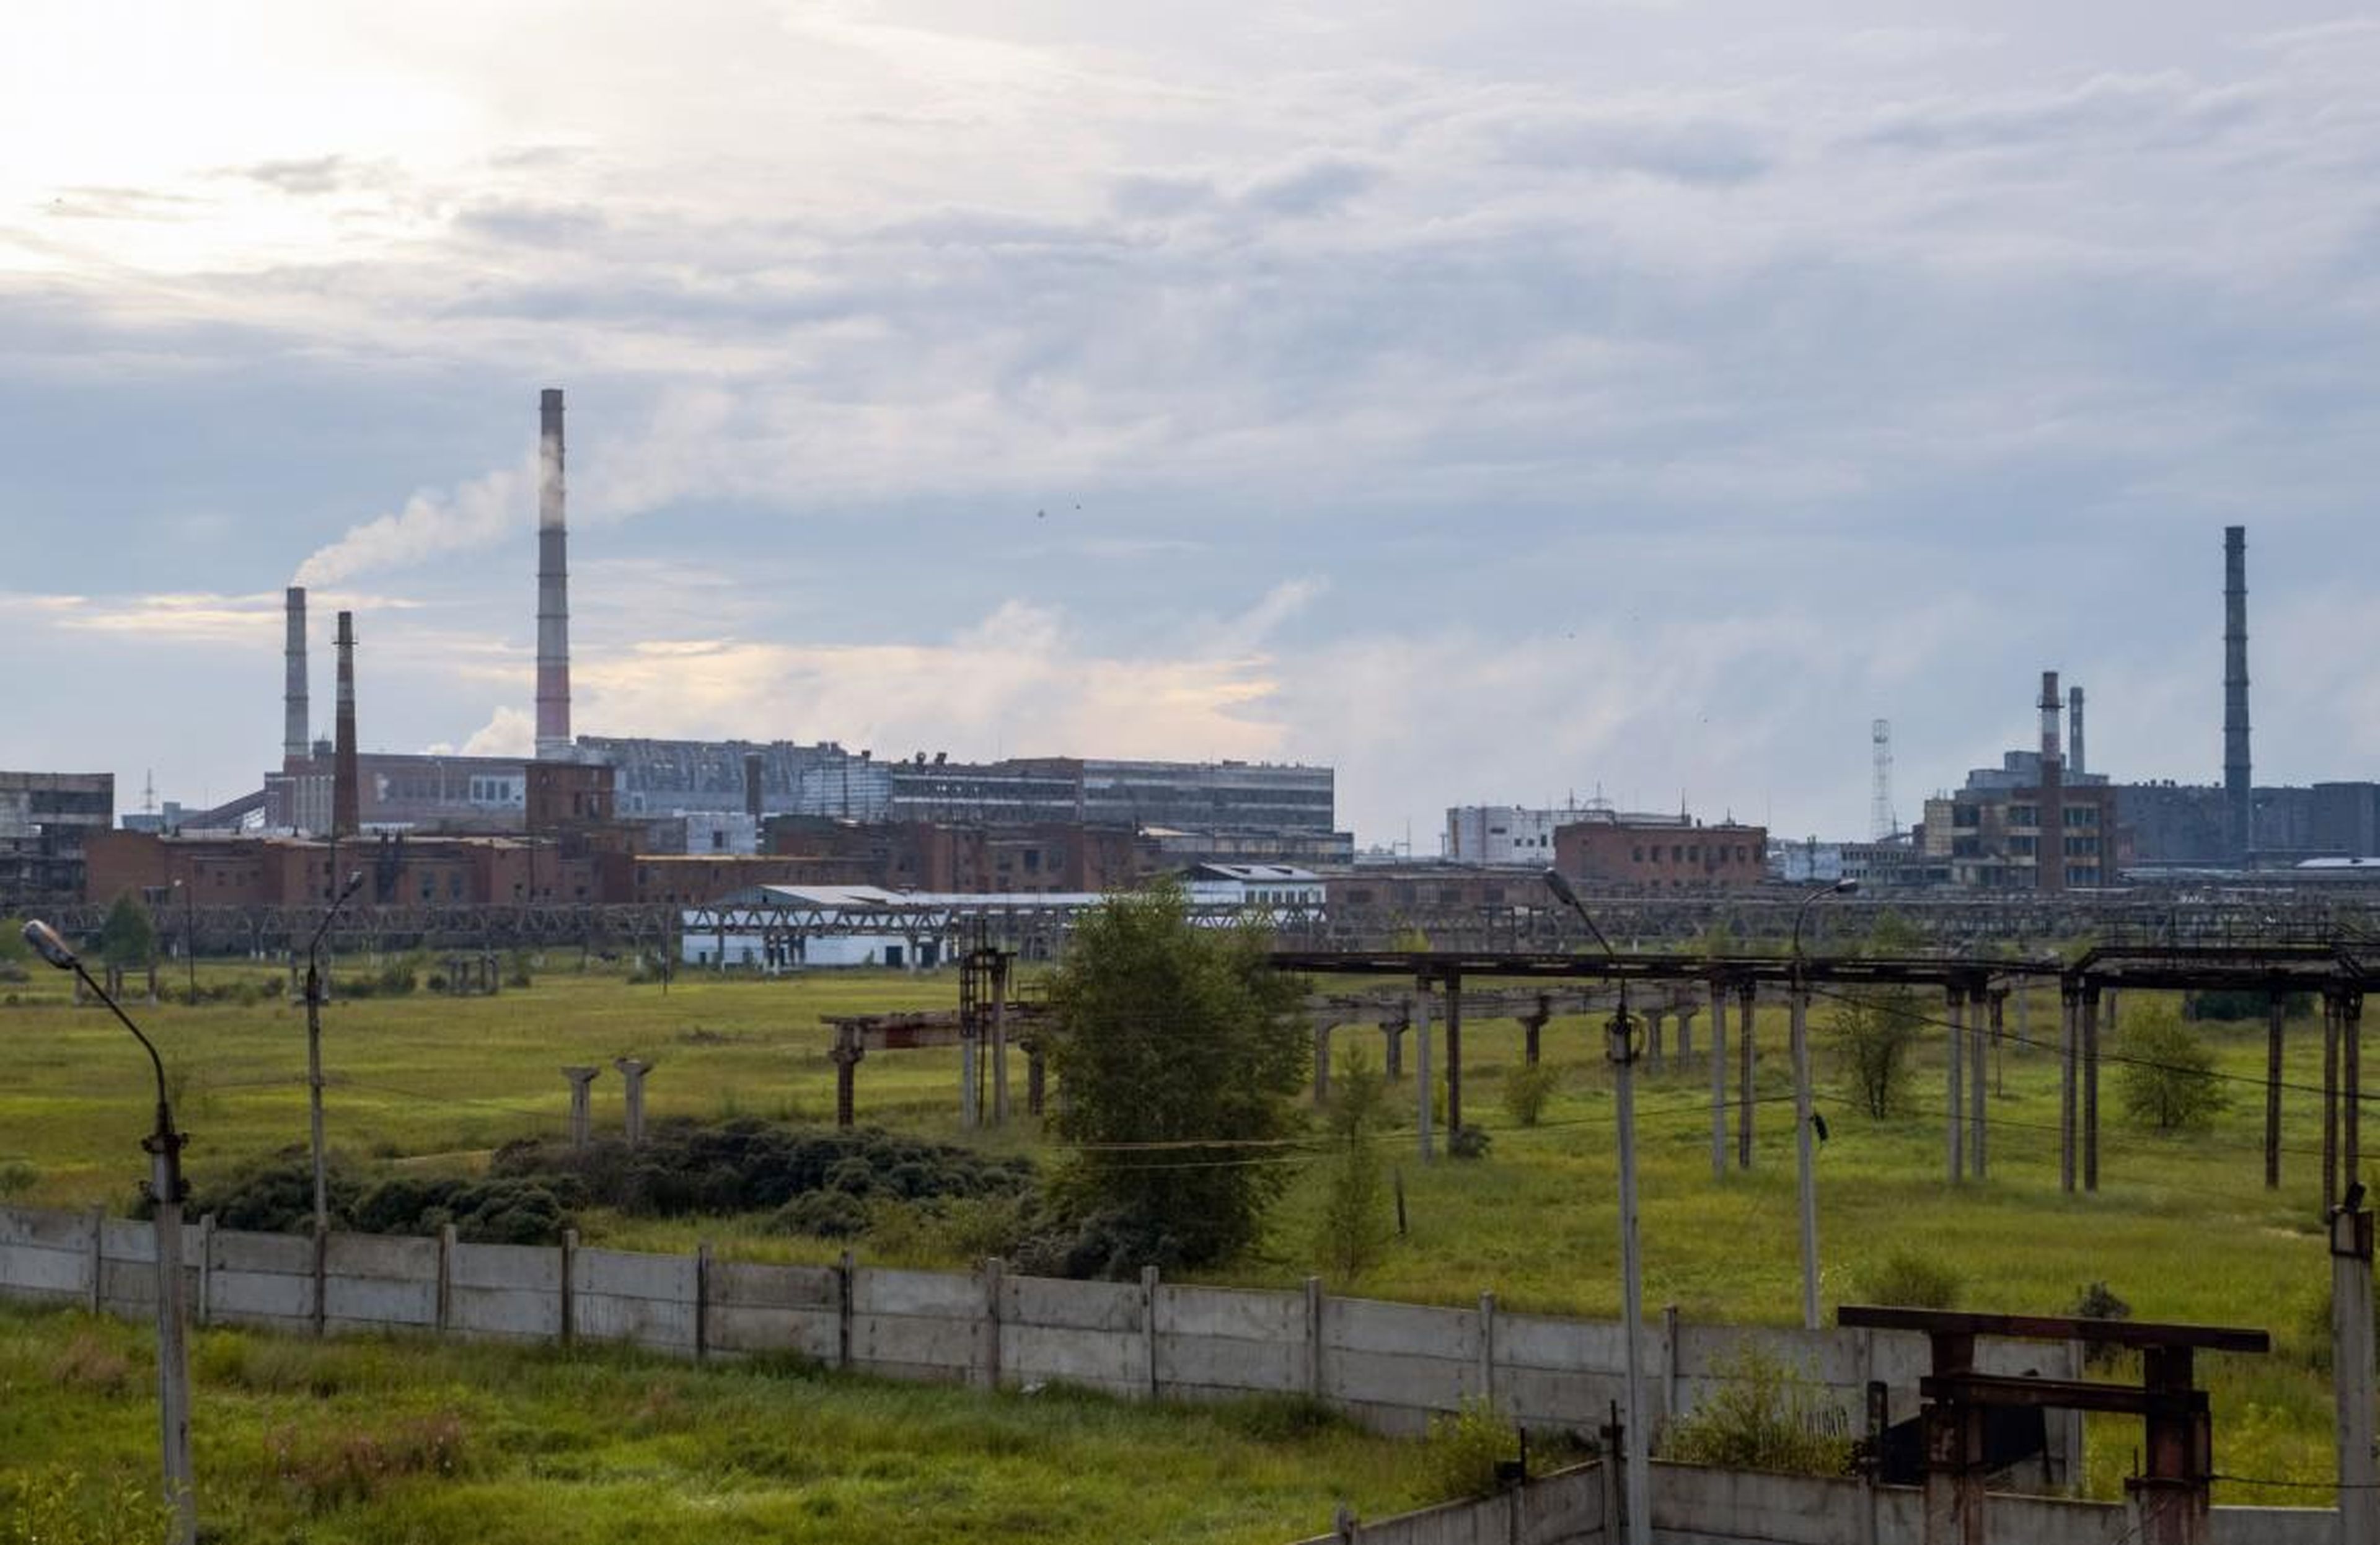 La planta de Usolyekhimprom en el sudeste de Rusia.